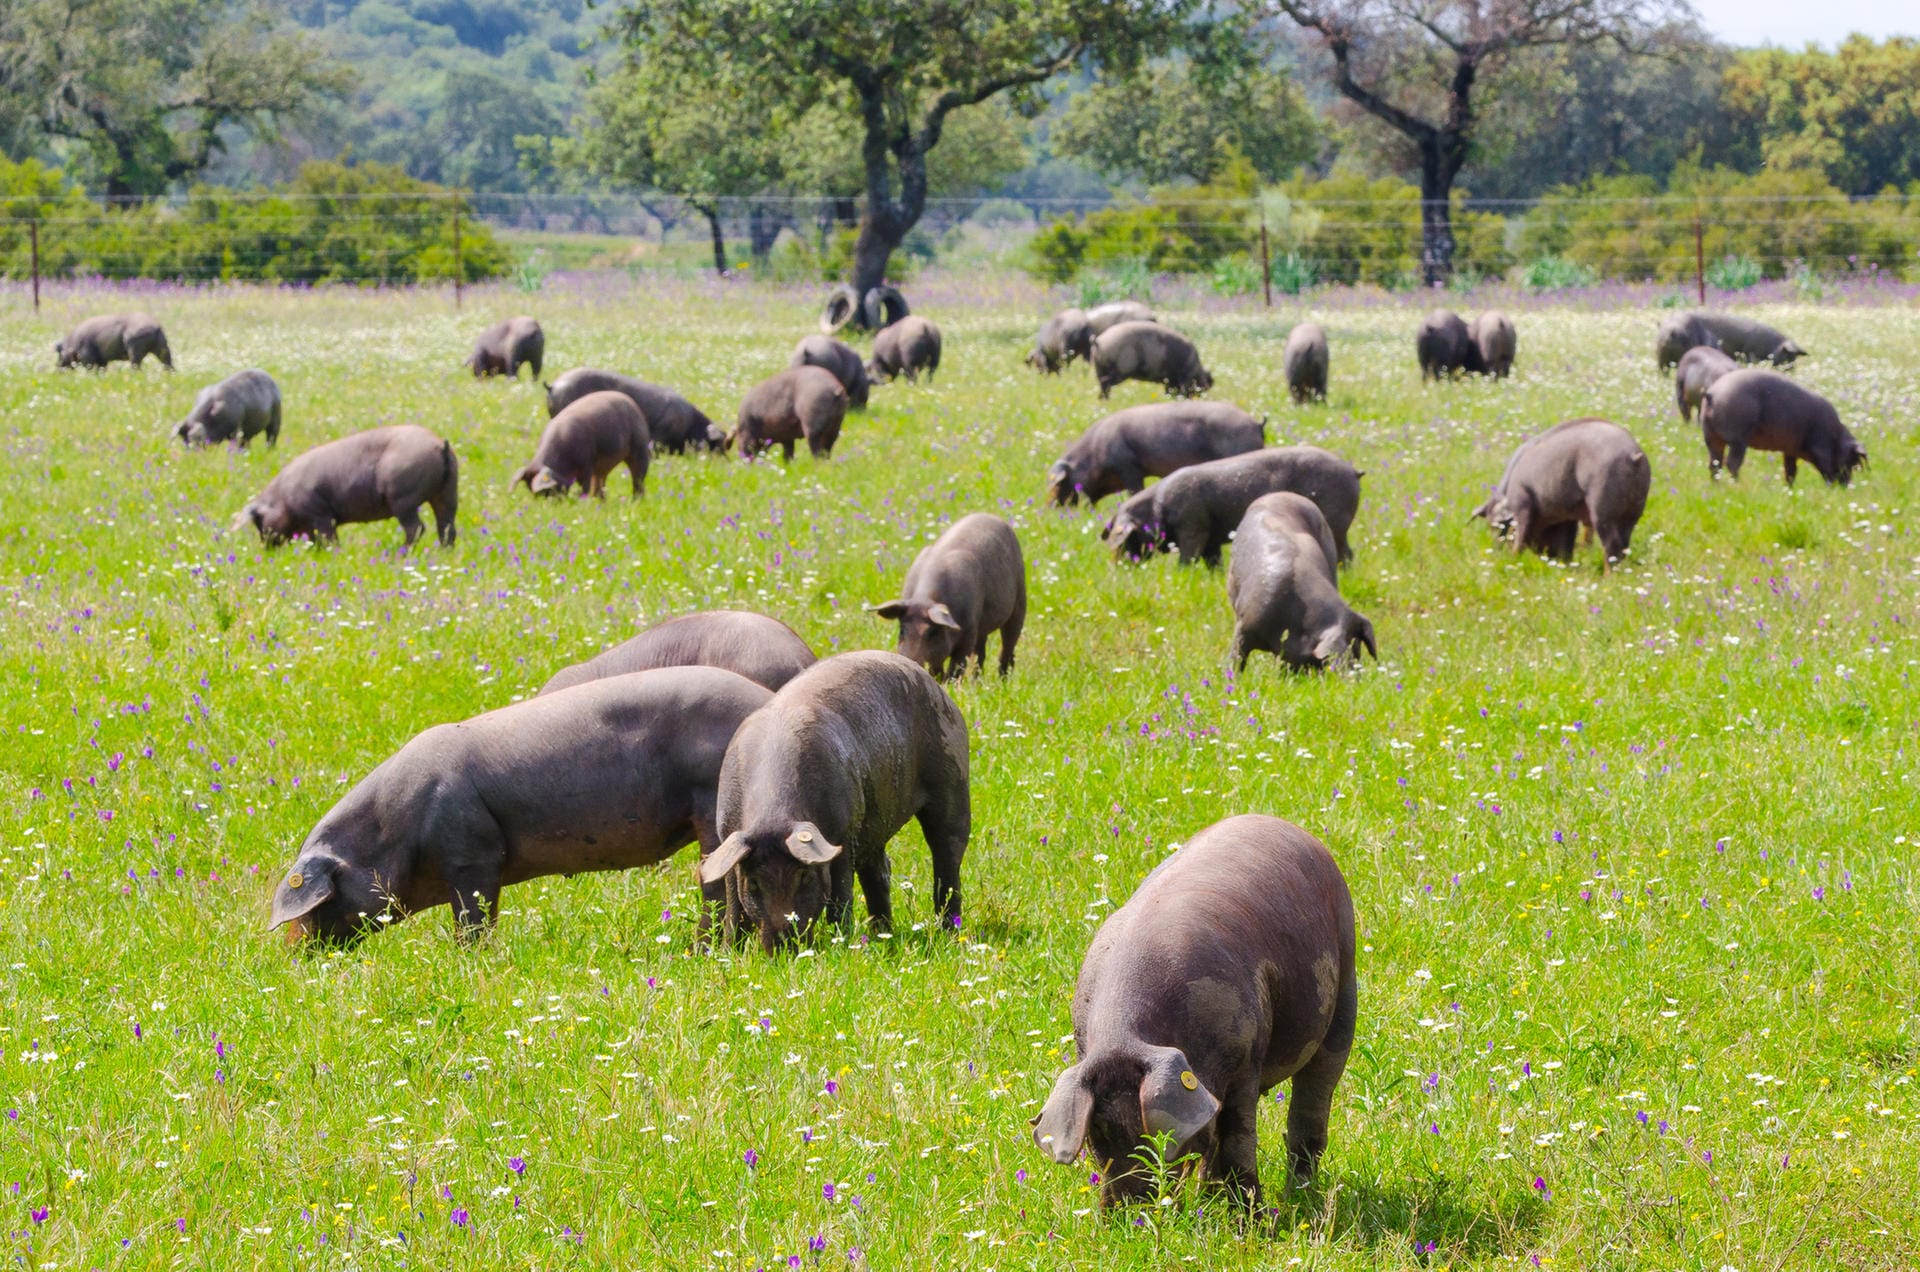 Die schwarzen Iberico-Schweine kommen aus dem Südwesten Spaniens und aus Portugal. Sie werden meist als Weideschweine freilaufend in Arealen mit Kork- und Steineichen gehalten und oft mit Eicheln gemästet. Ihr Fleisch ist besonders zart, aromatisch – und nicht billig.